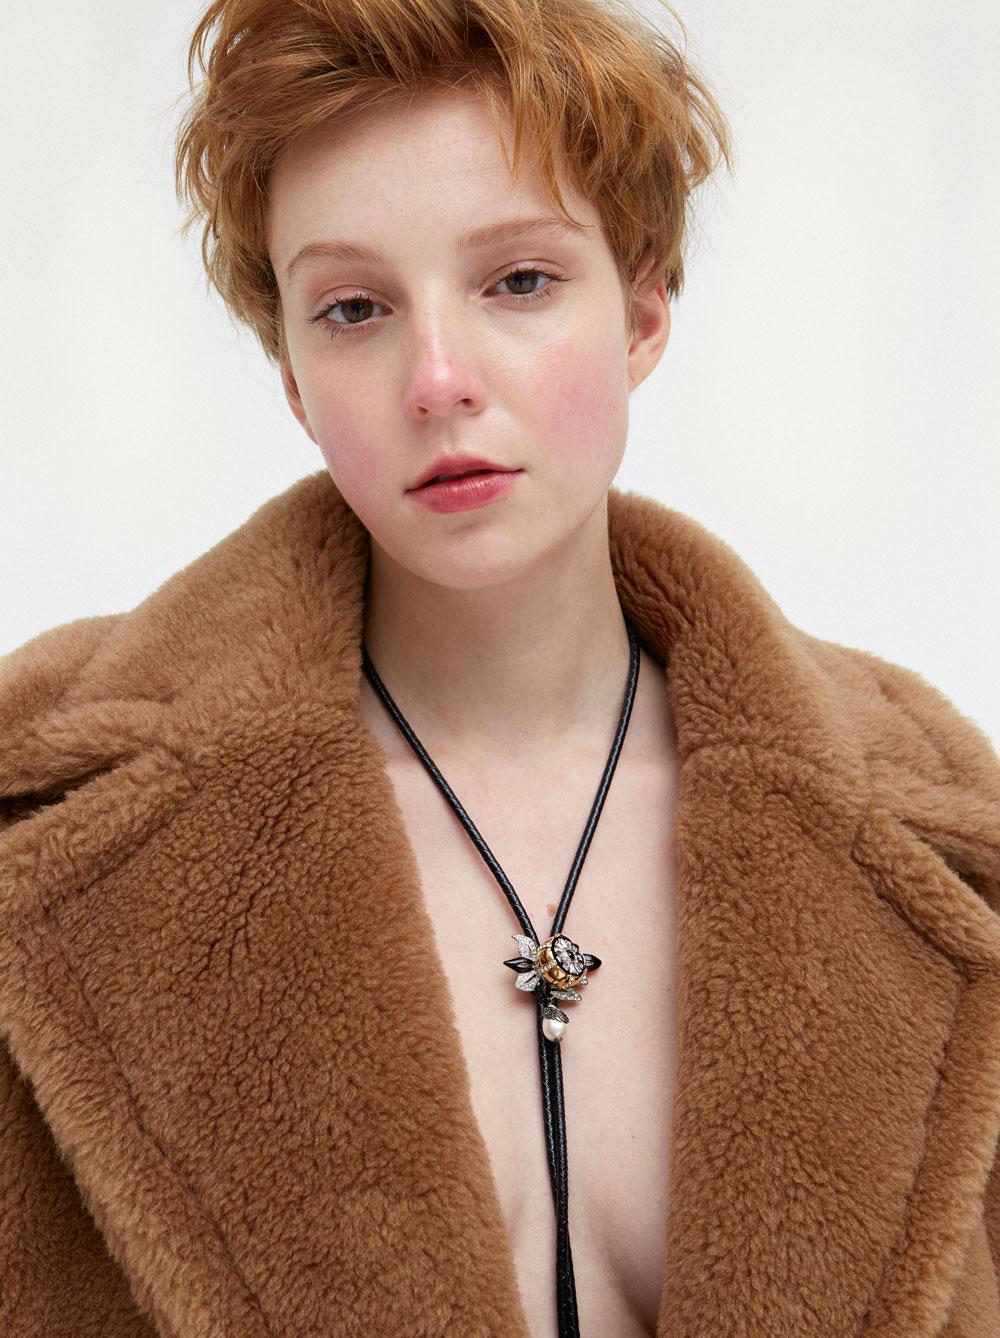 Manteau ample en laine de chameau effet fourrure, MaxMara. Collier en cuir noir tressé, Louis Vuitton.